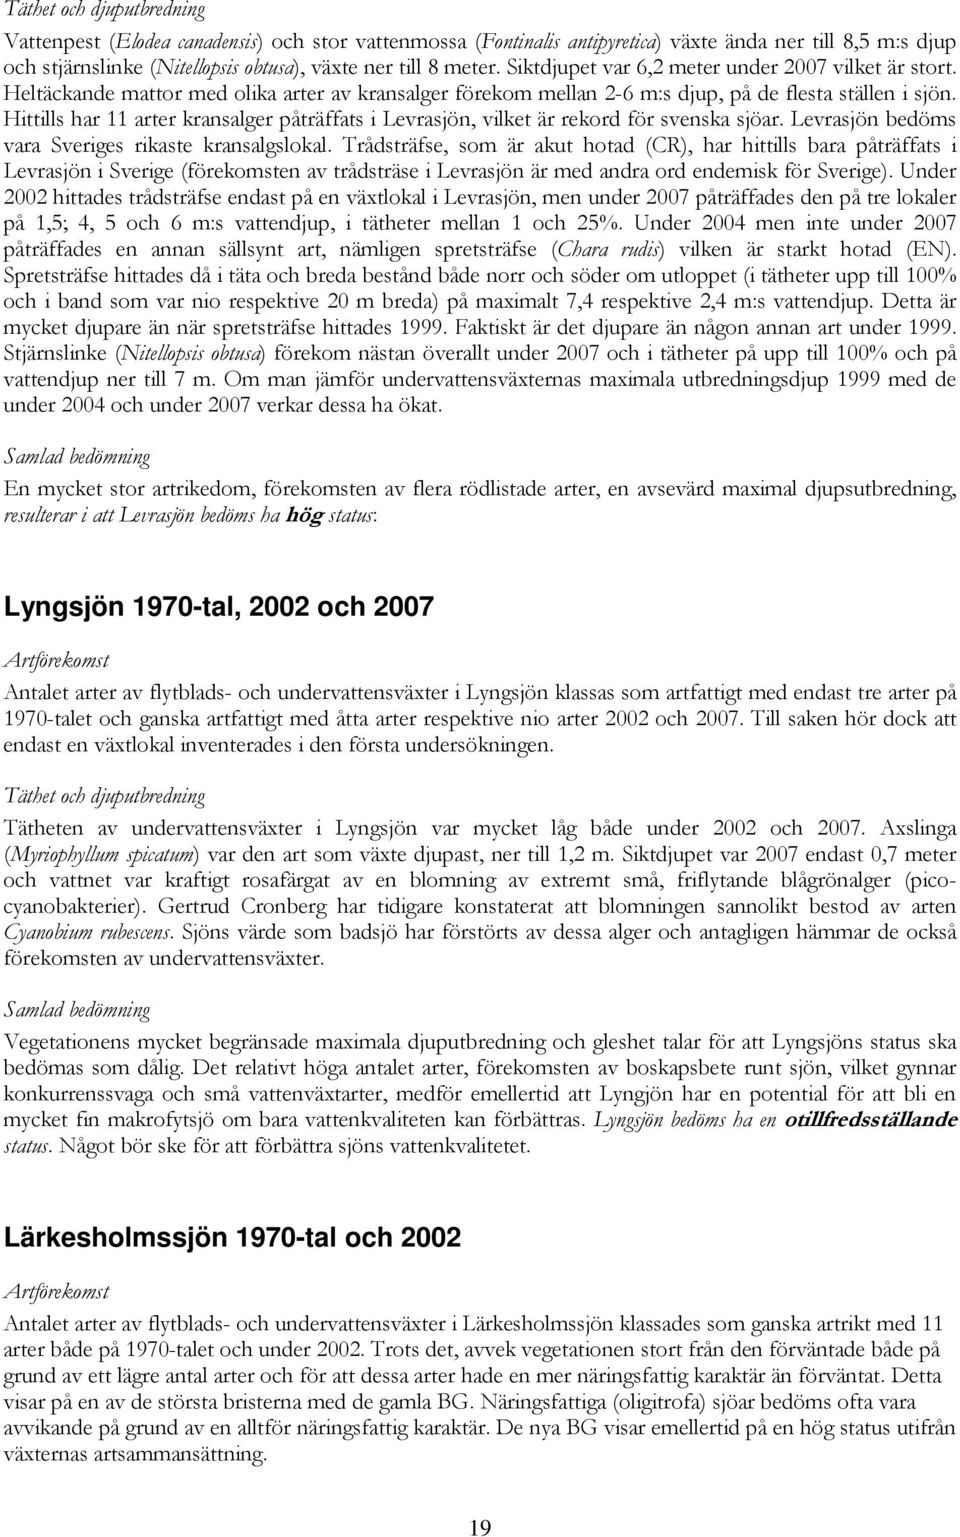 Hittills har 11 arter kransalger påträffats i Levrasjön, vilket är rekord för svenska sjöar. Levrasjön bedöms vara Sveriges rikaste kransalgslokal.